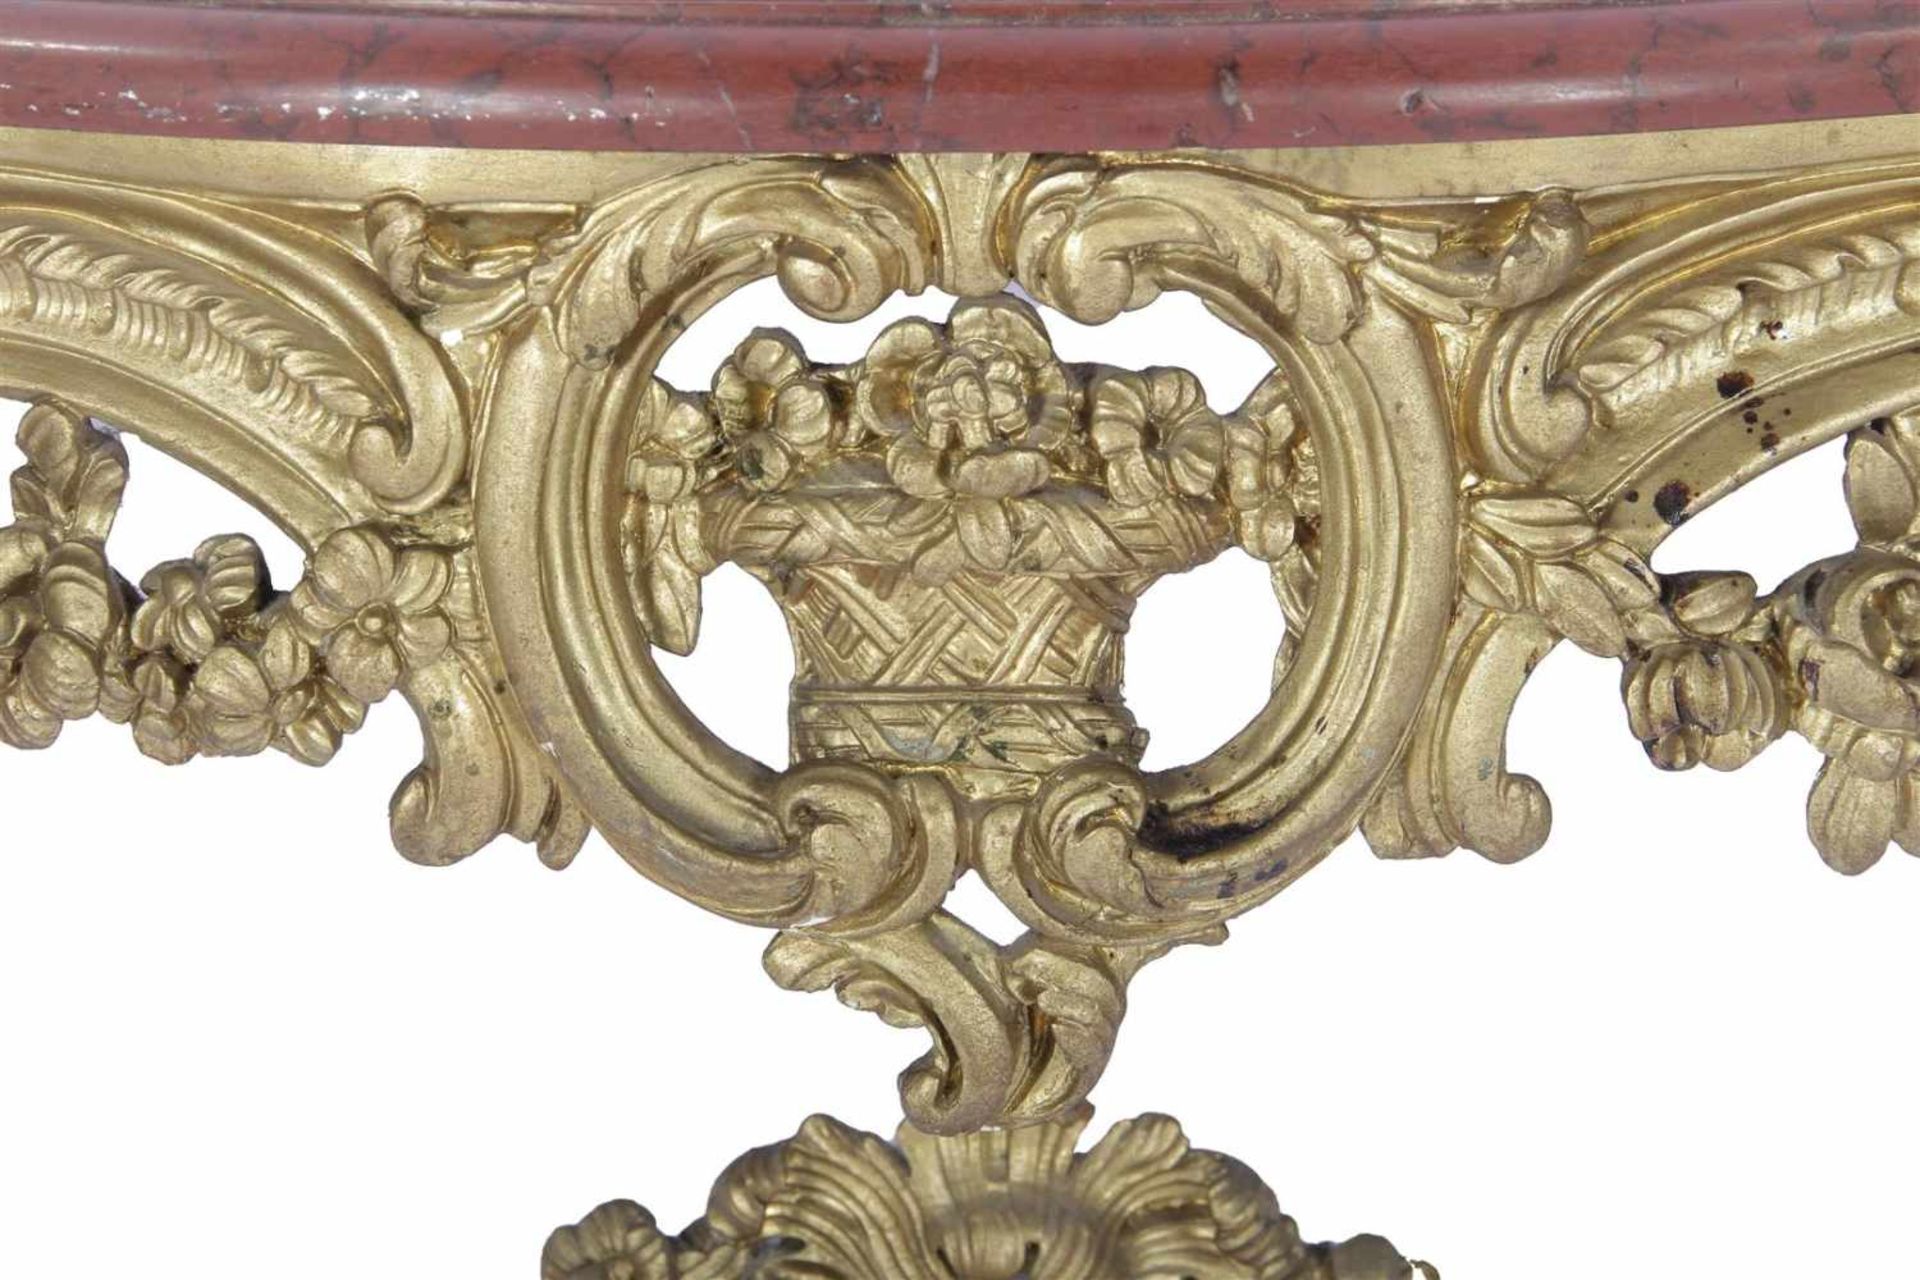 Barok houten vergulde consoletafel met rood marmeren blad 69 cm hoog, 107,5 cm breed, 45 cm diep - Bild 2 aus 2